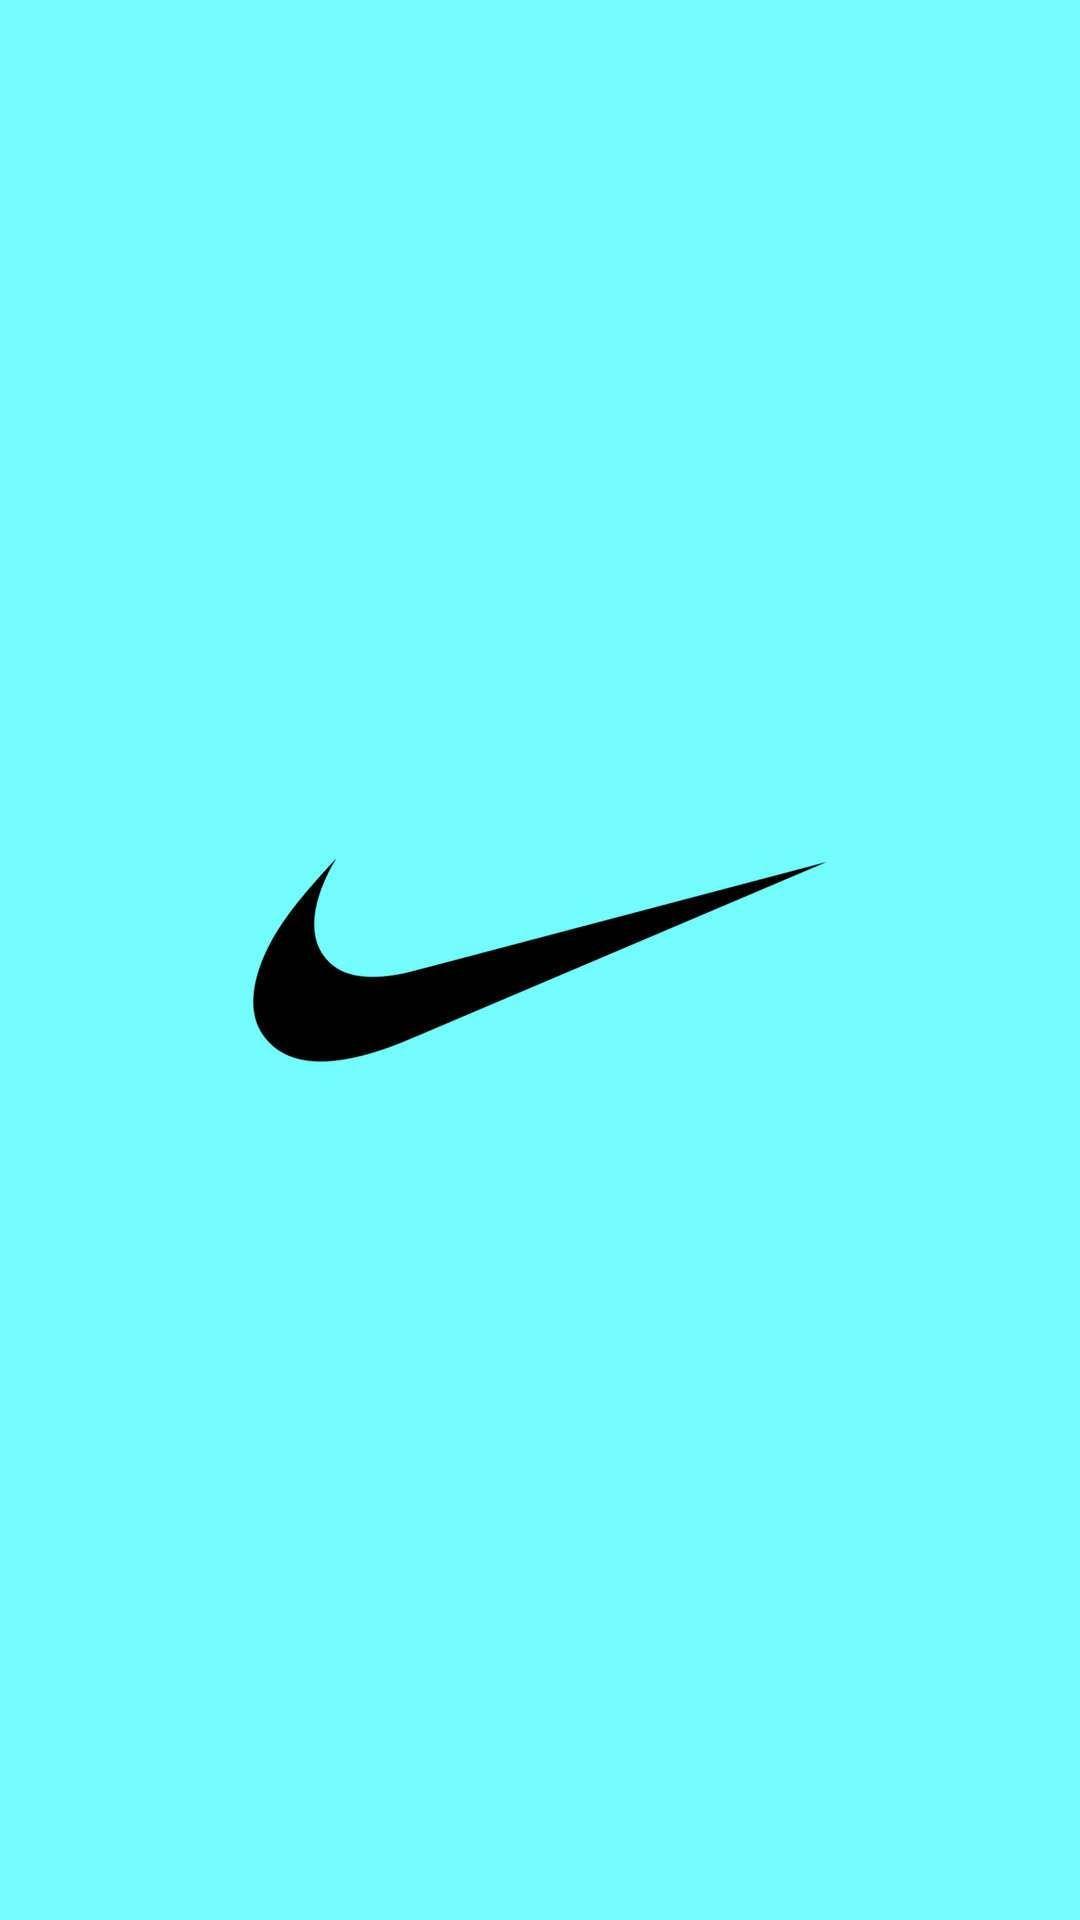 NIKE Logo iPhone Wallpaper. Work it girl!. Nike logo